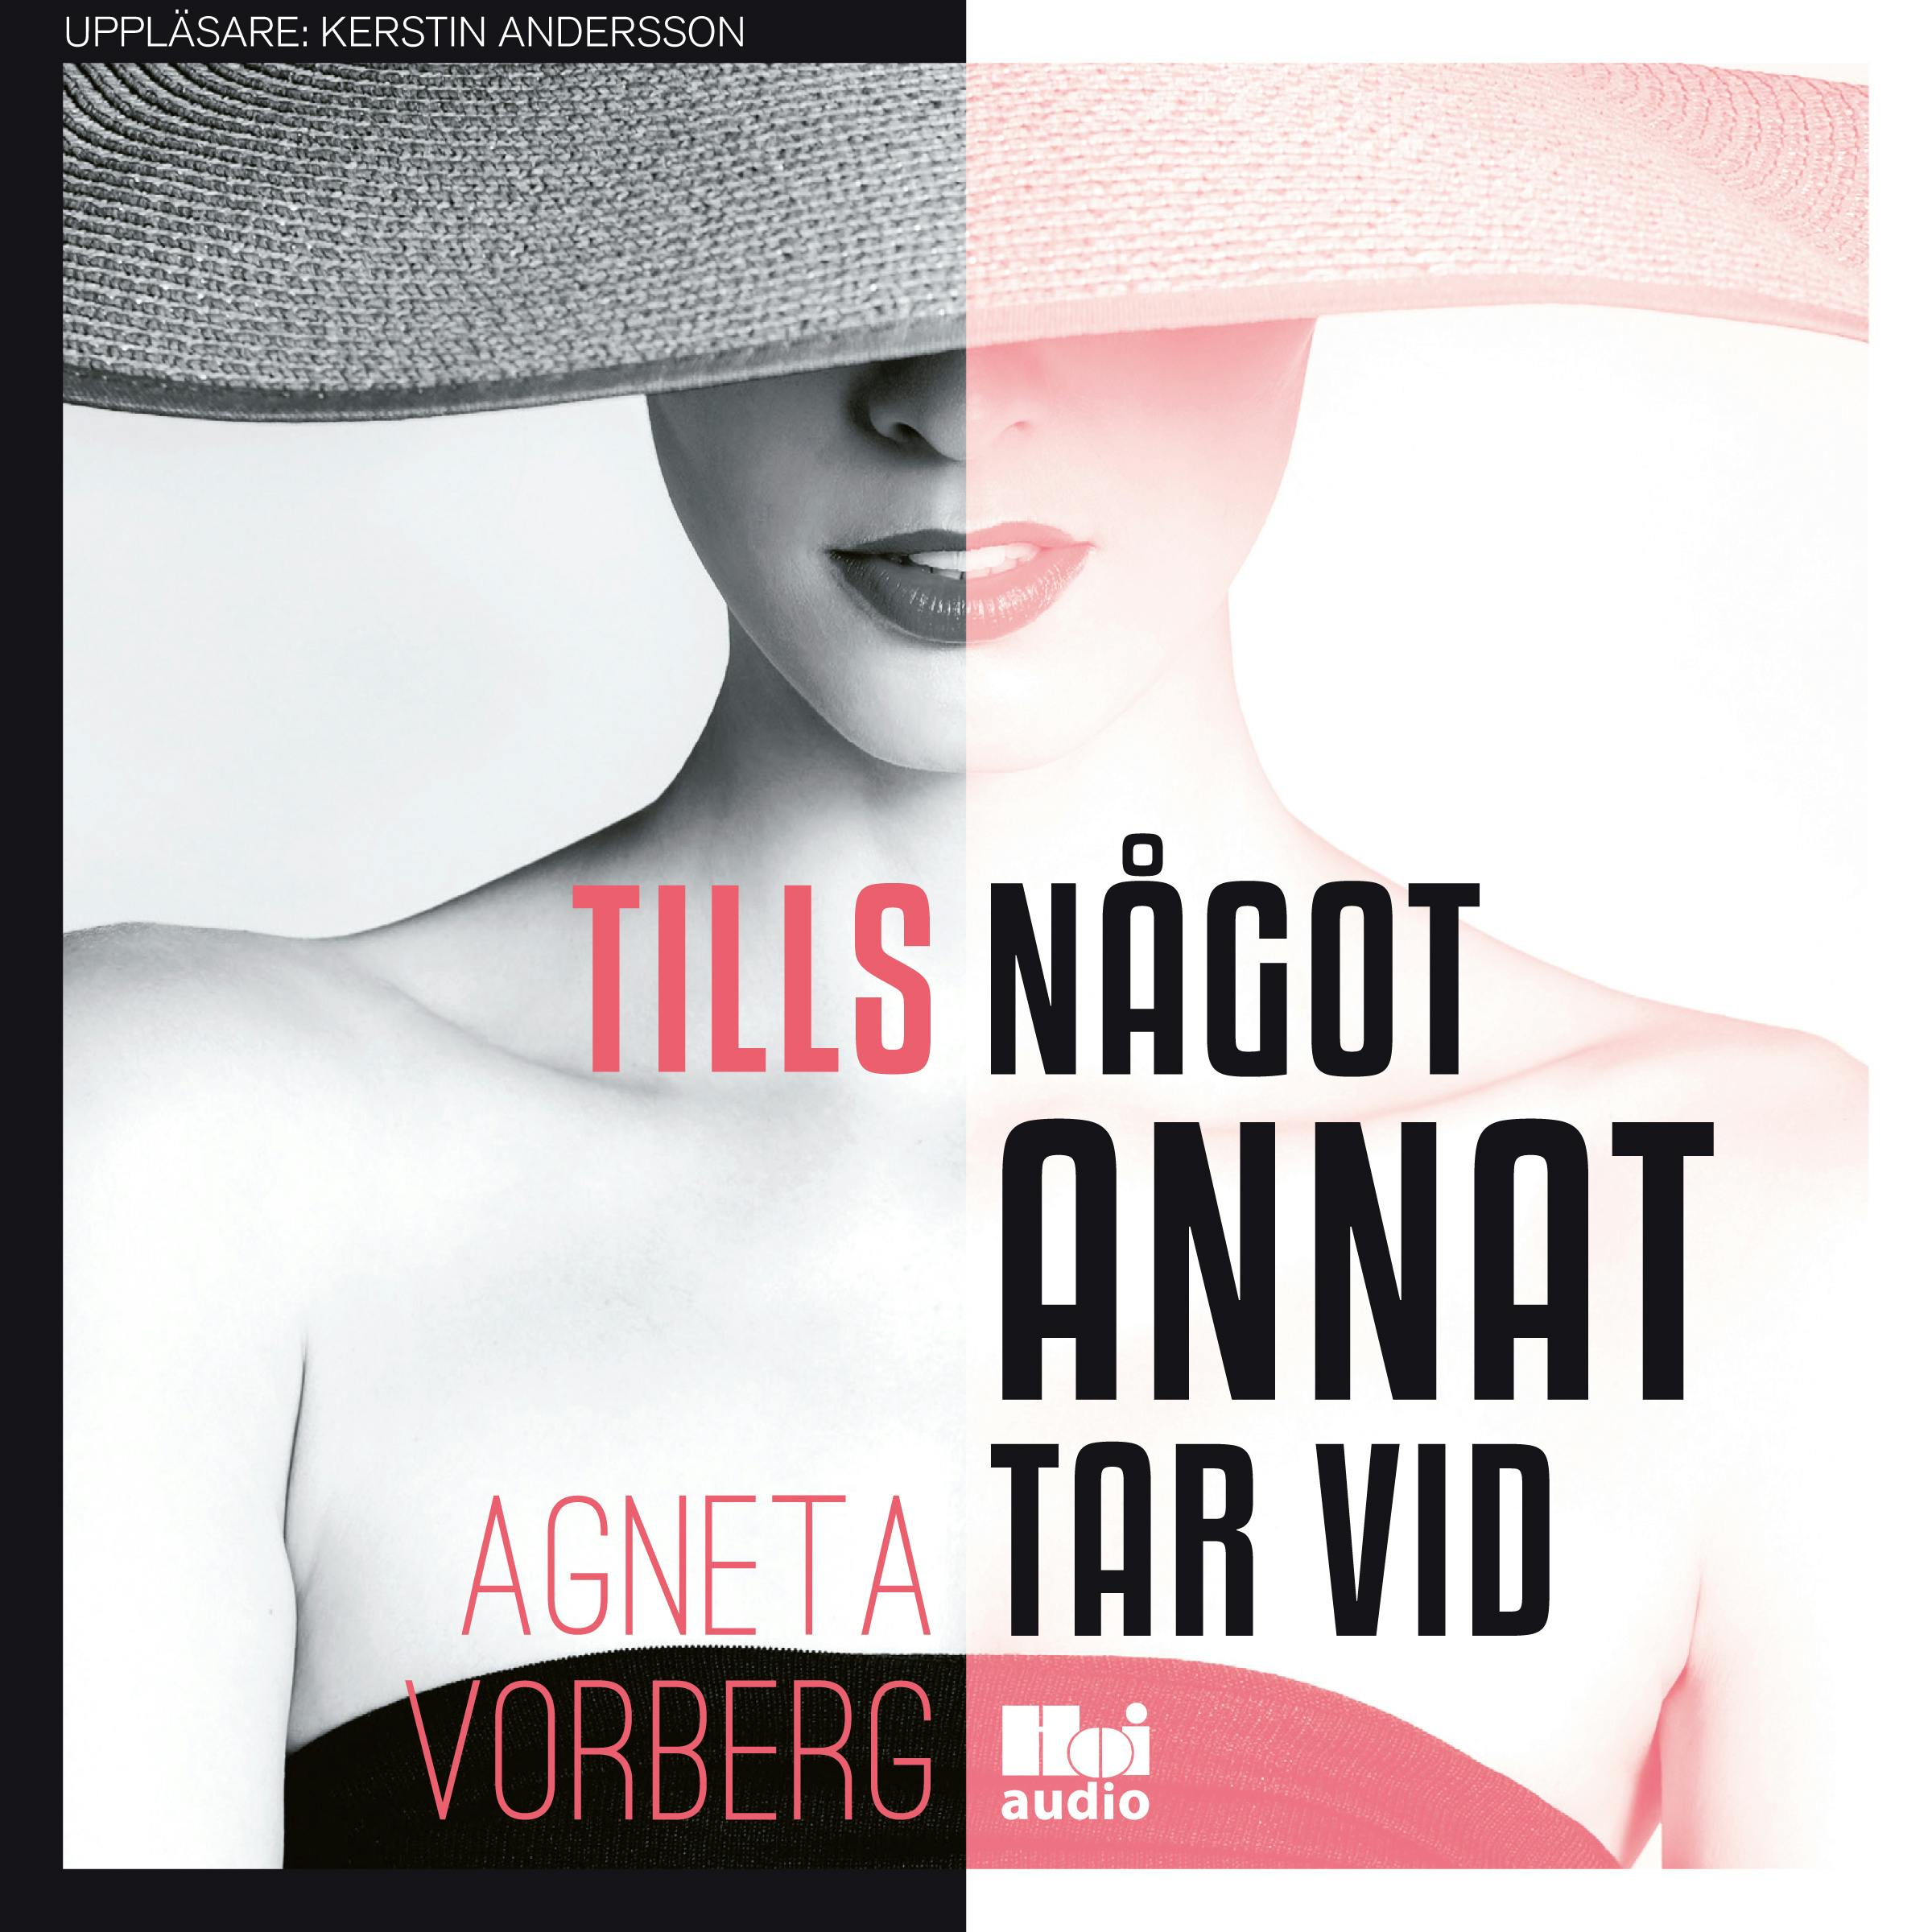 Tills något annat tar vid - Agneta Vorberg